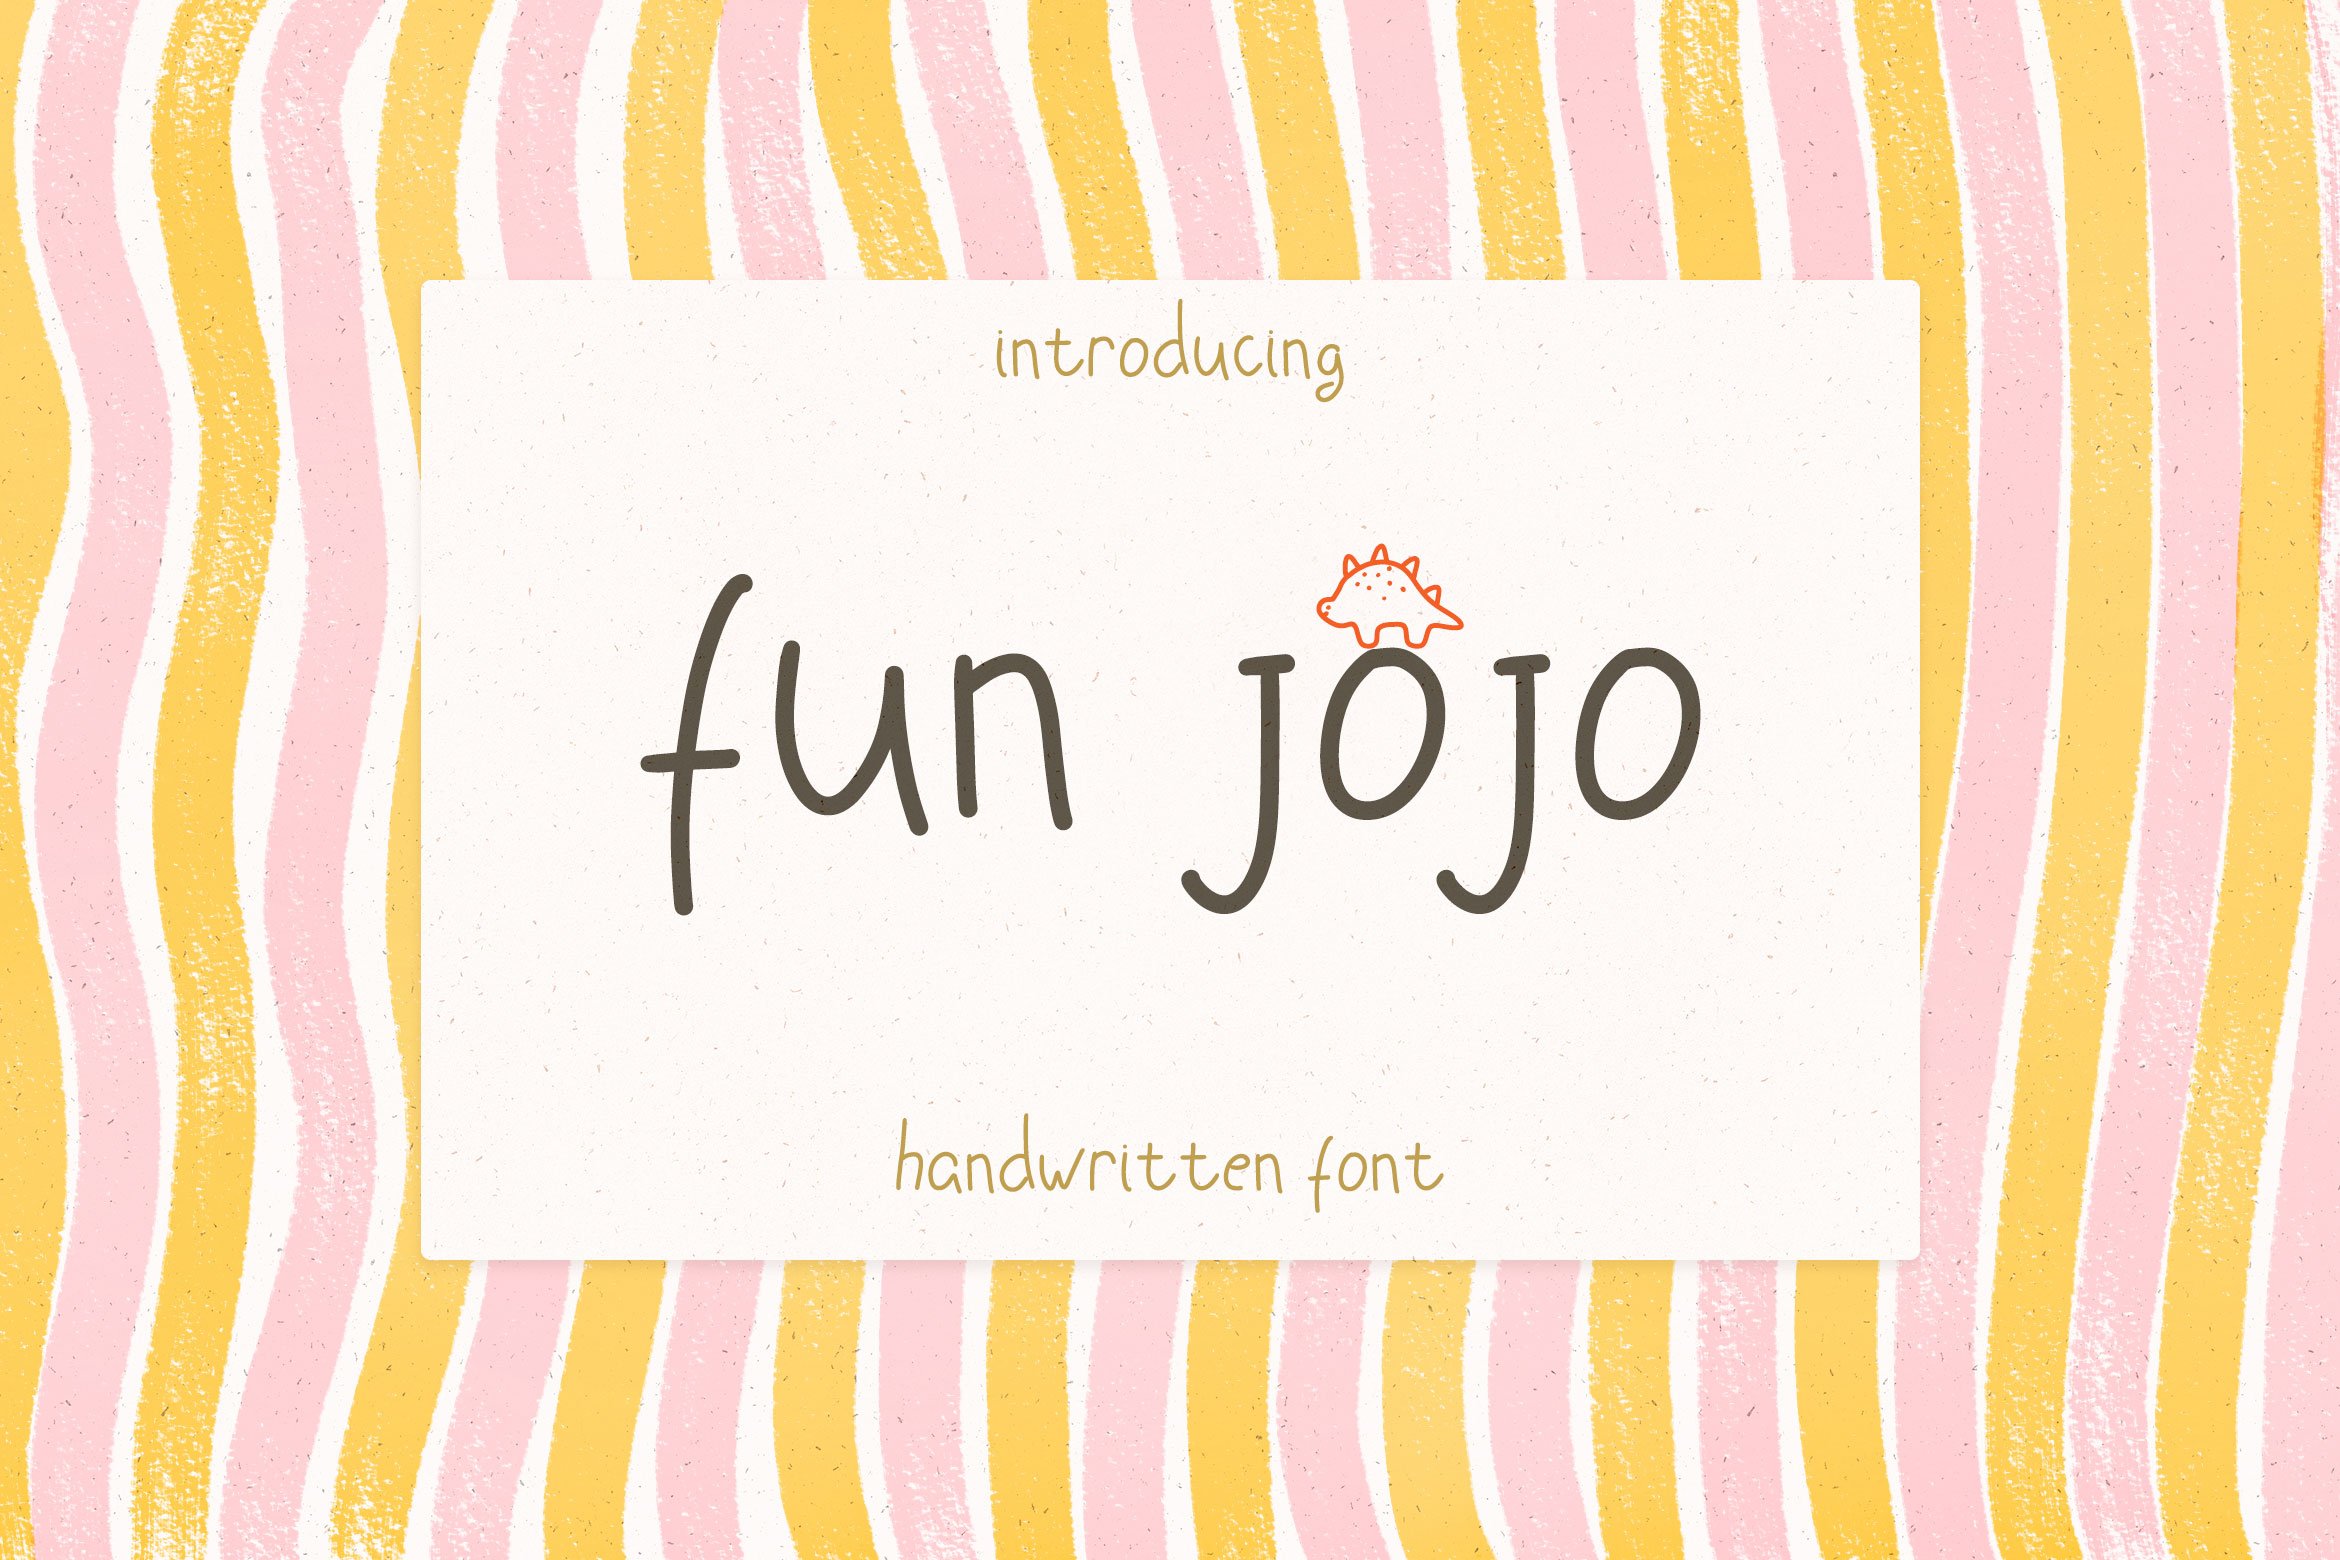 fun JOJO Handwritten Font cover image.